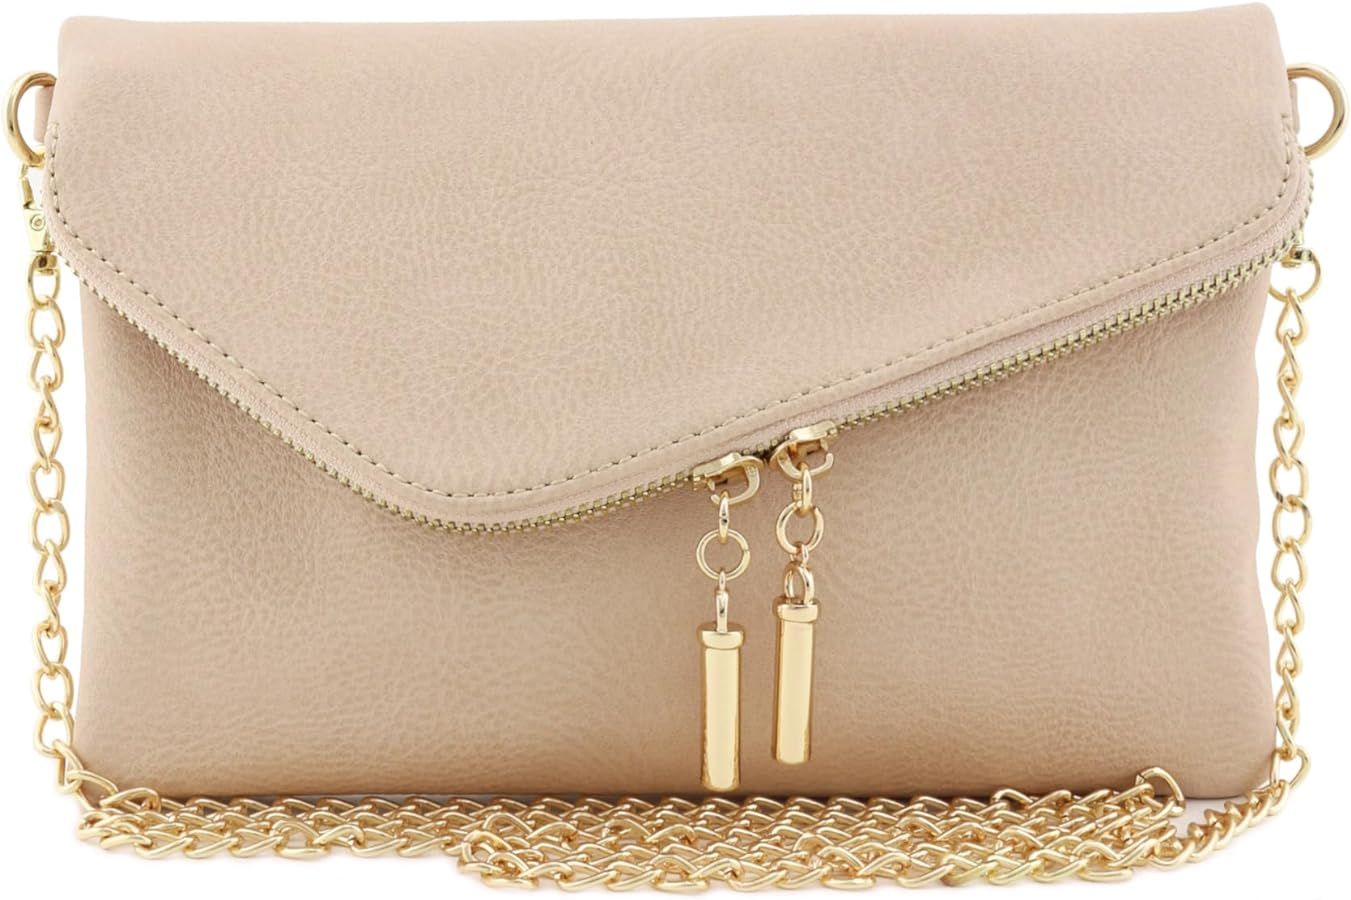 FashionPuzzle Envelope Clutch Evening Bag | Amazon (US)